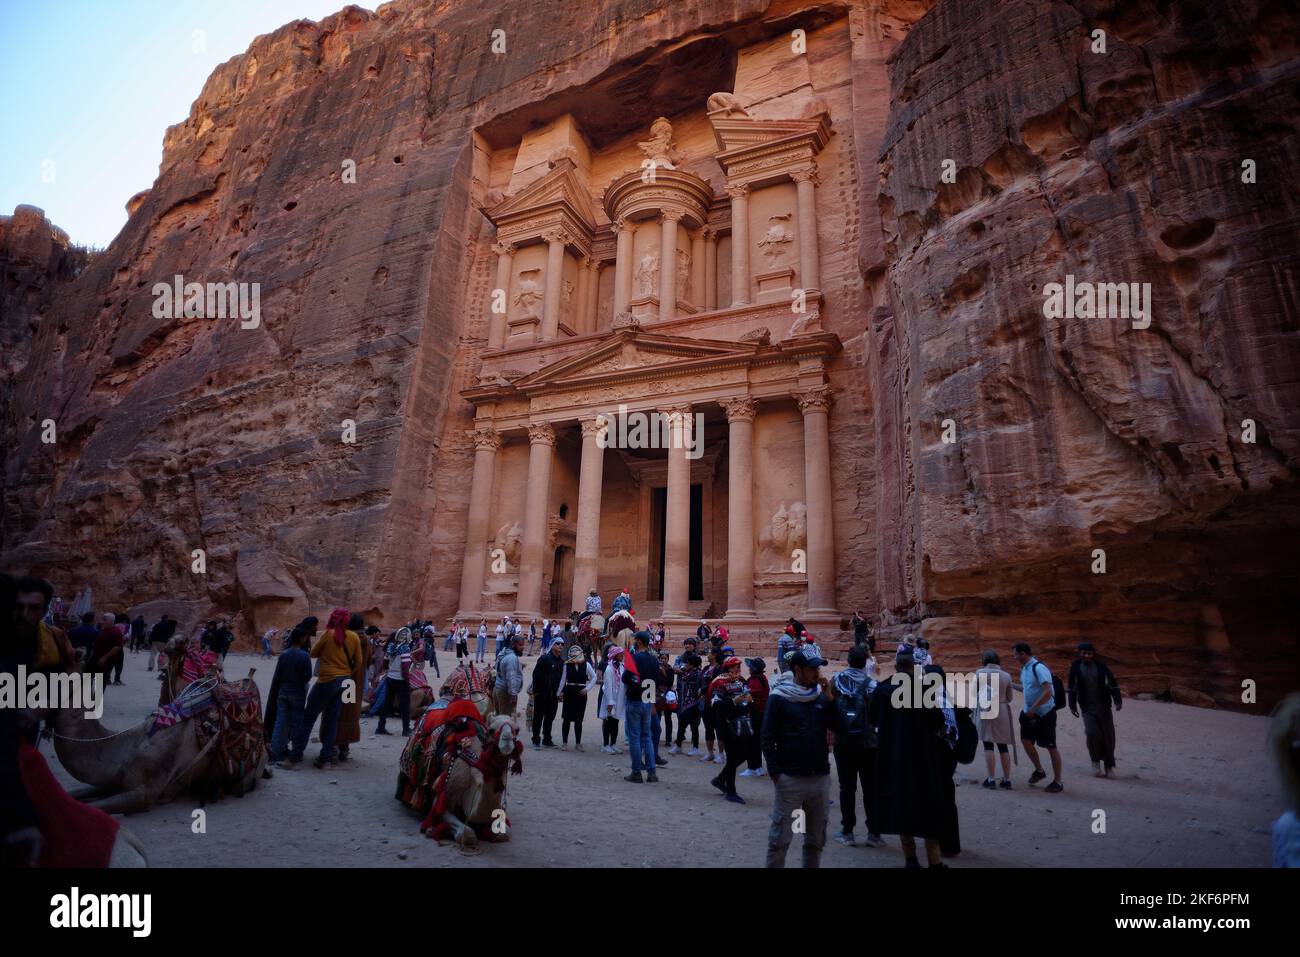 Patrimonio de la Humanidad de la antigua ciudad de Petra en Jordania. Foto de stock